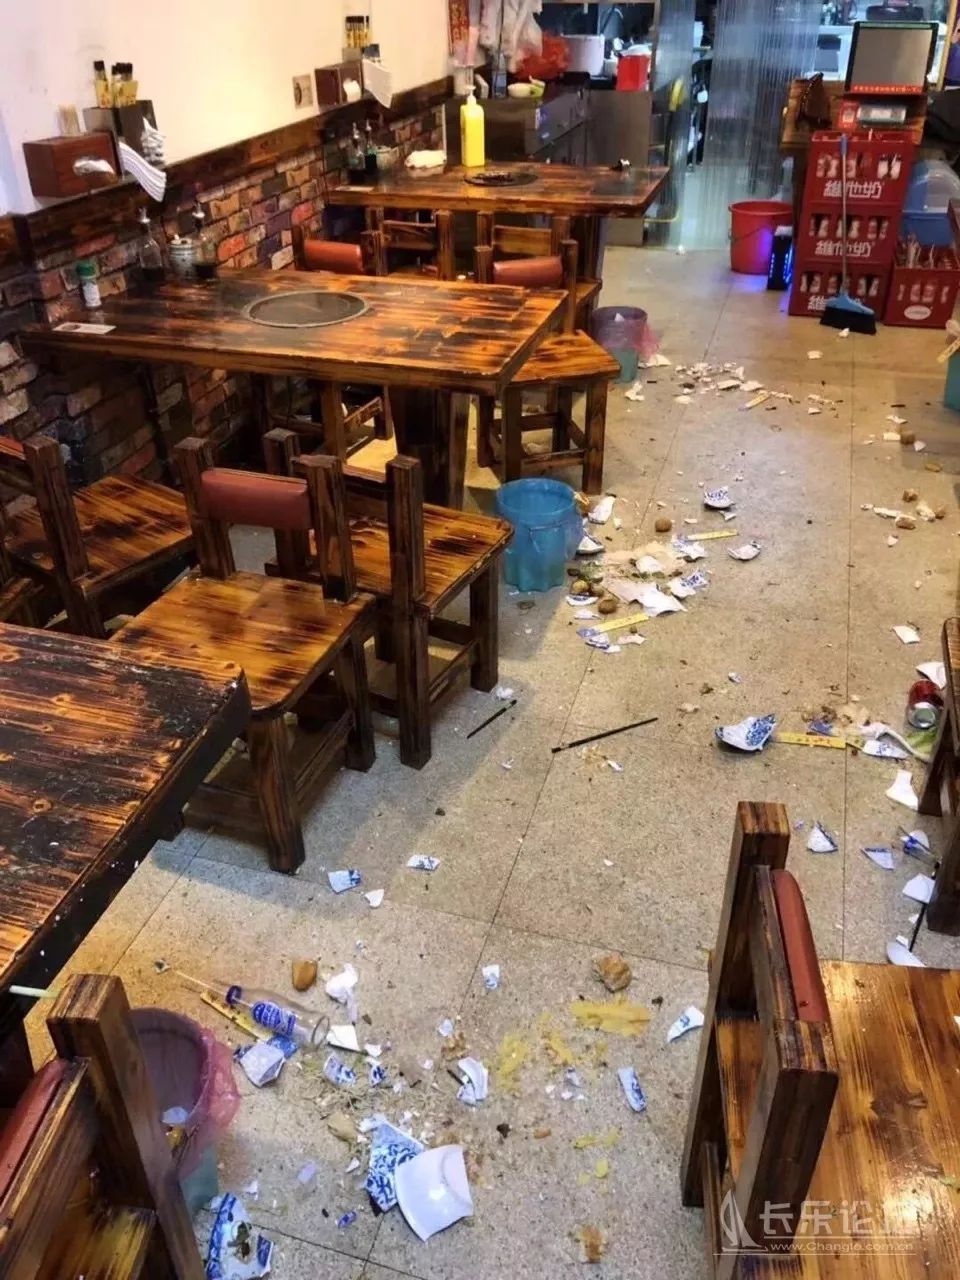 福州长乐某餐饮店遭不明身份人员打砸现场视频曝光